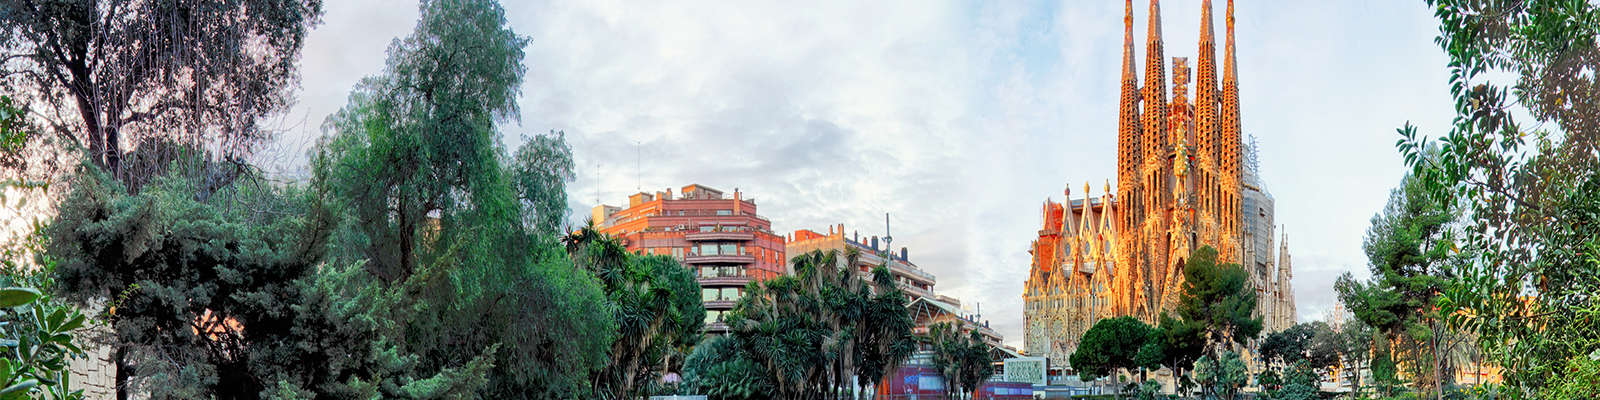 La ciudad de Gaudí, a tus pies